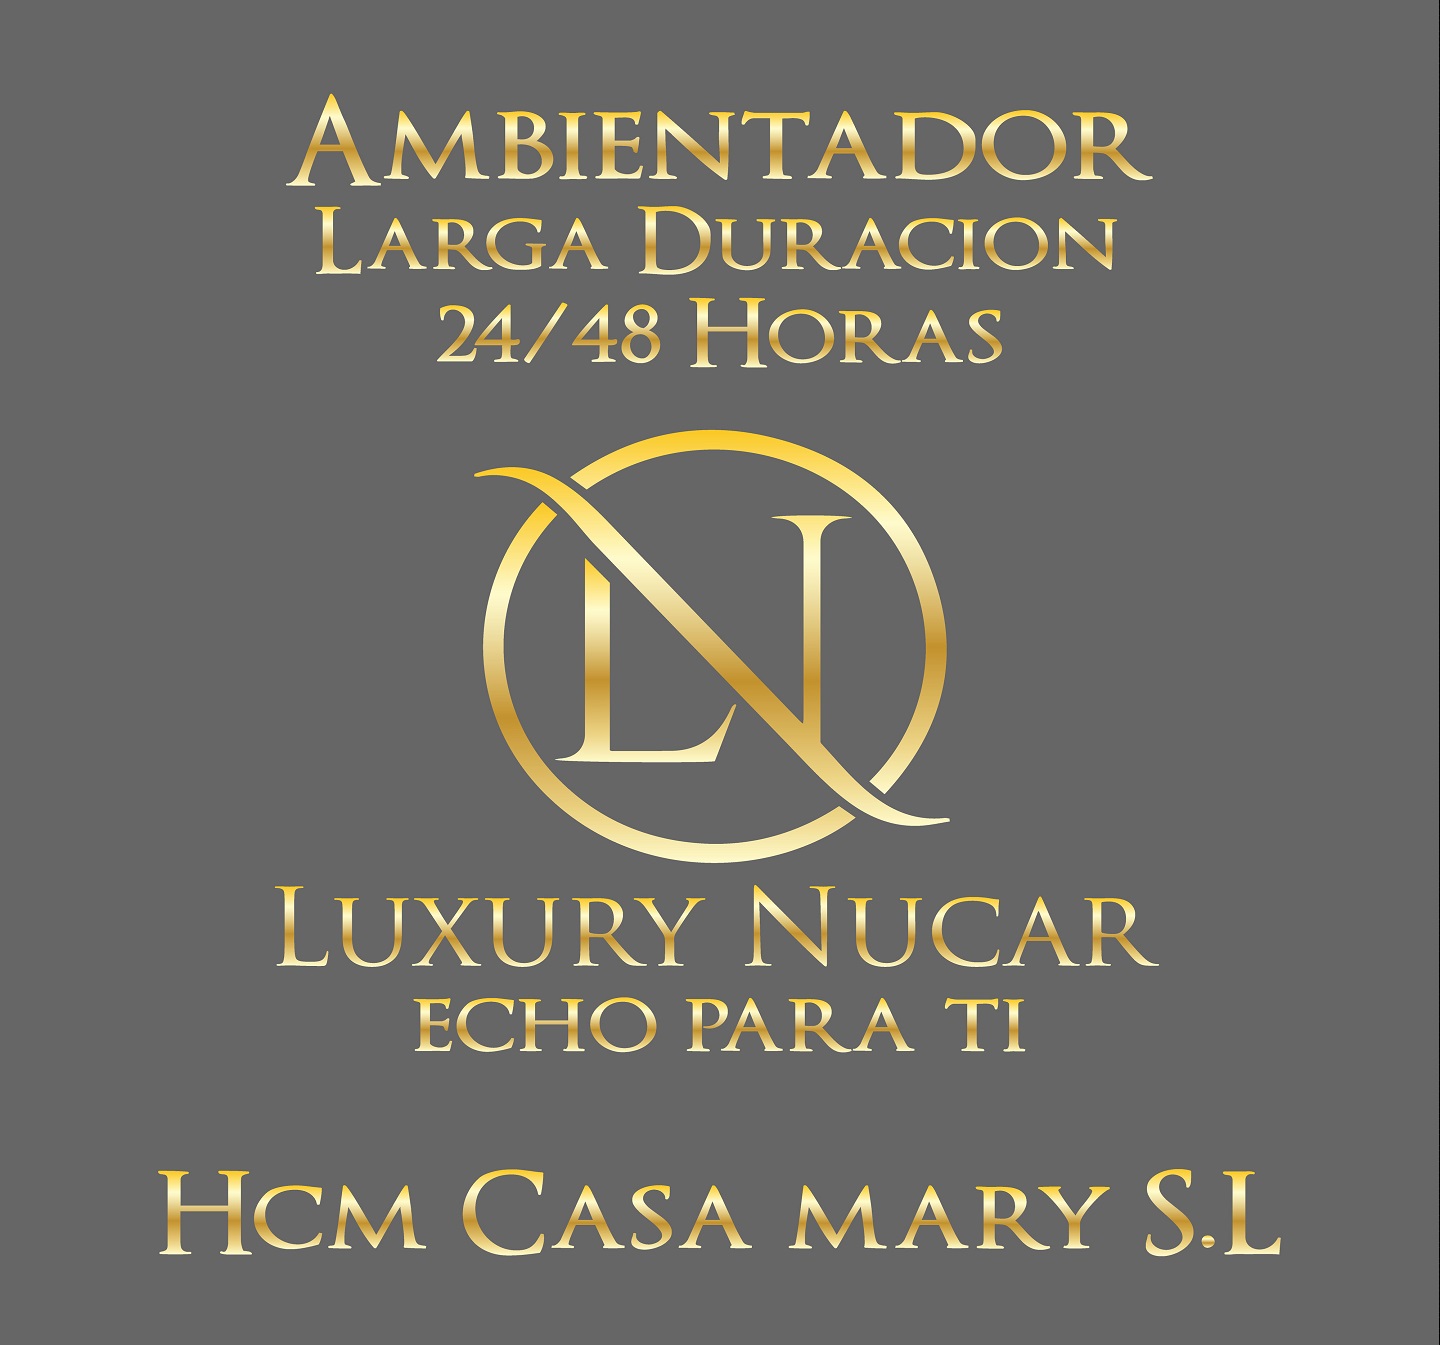 HCM. CASA MARY,  S.L